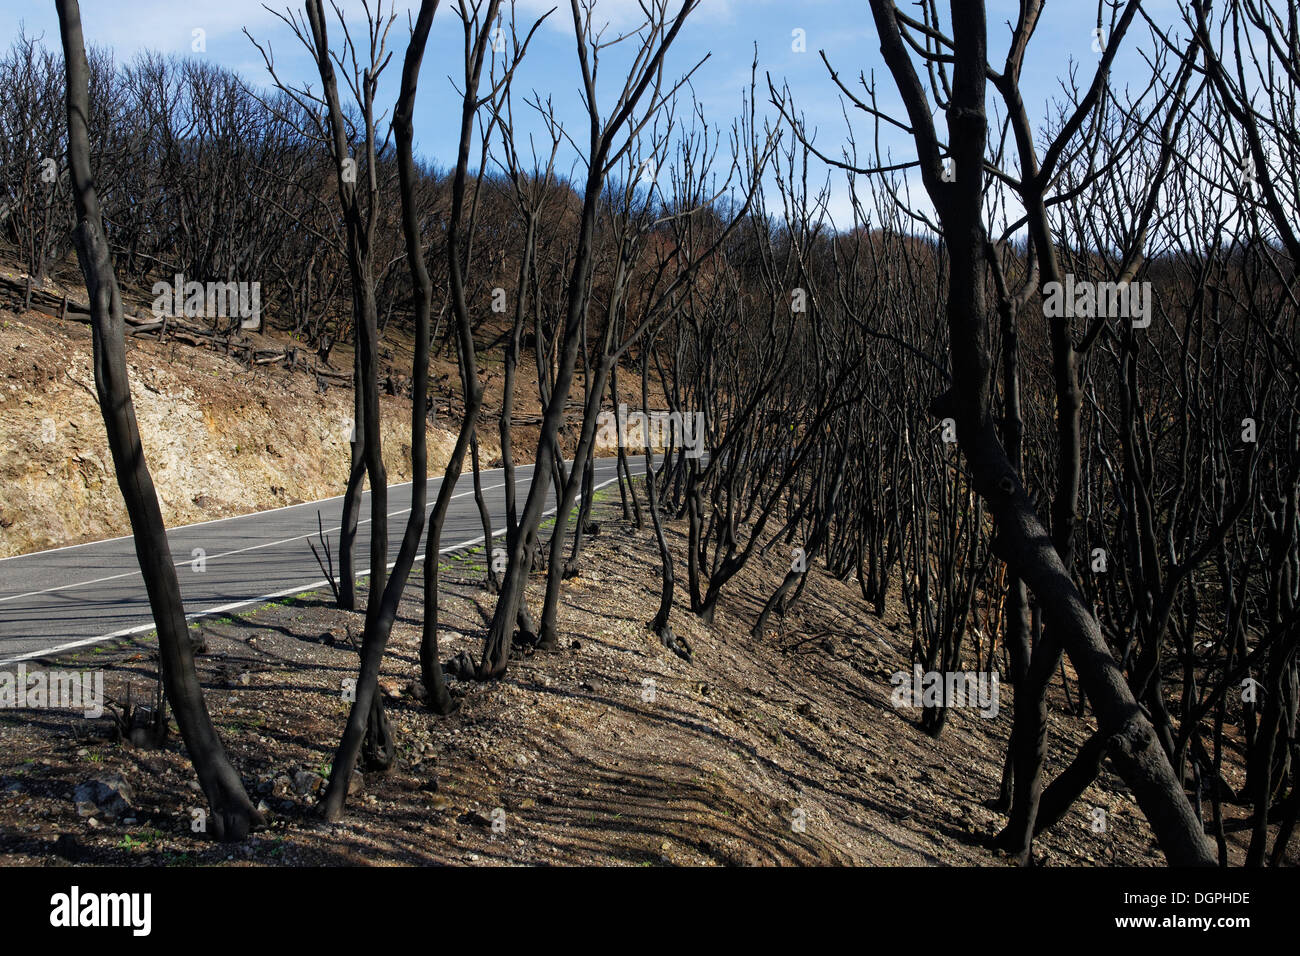 Daño por fuego, cuatro meses después de un incendio forestal, junto a una carretera rural, Parque Nacional de Garajonay, en La Gomera, Islas Canarias, España Foto de stock